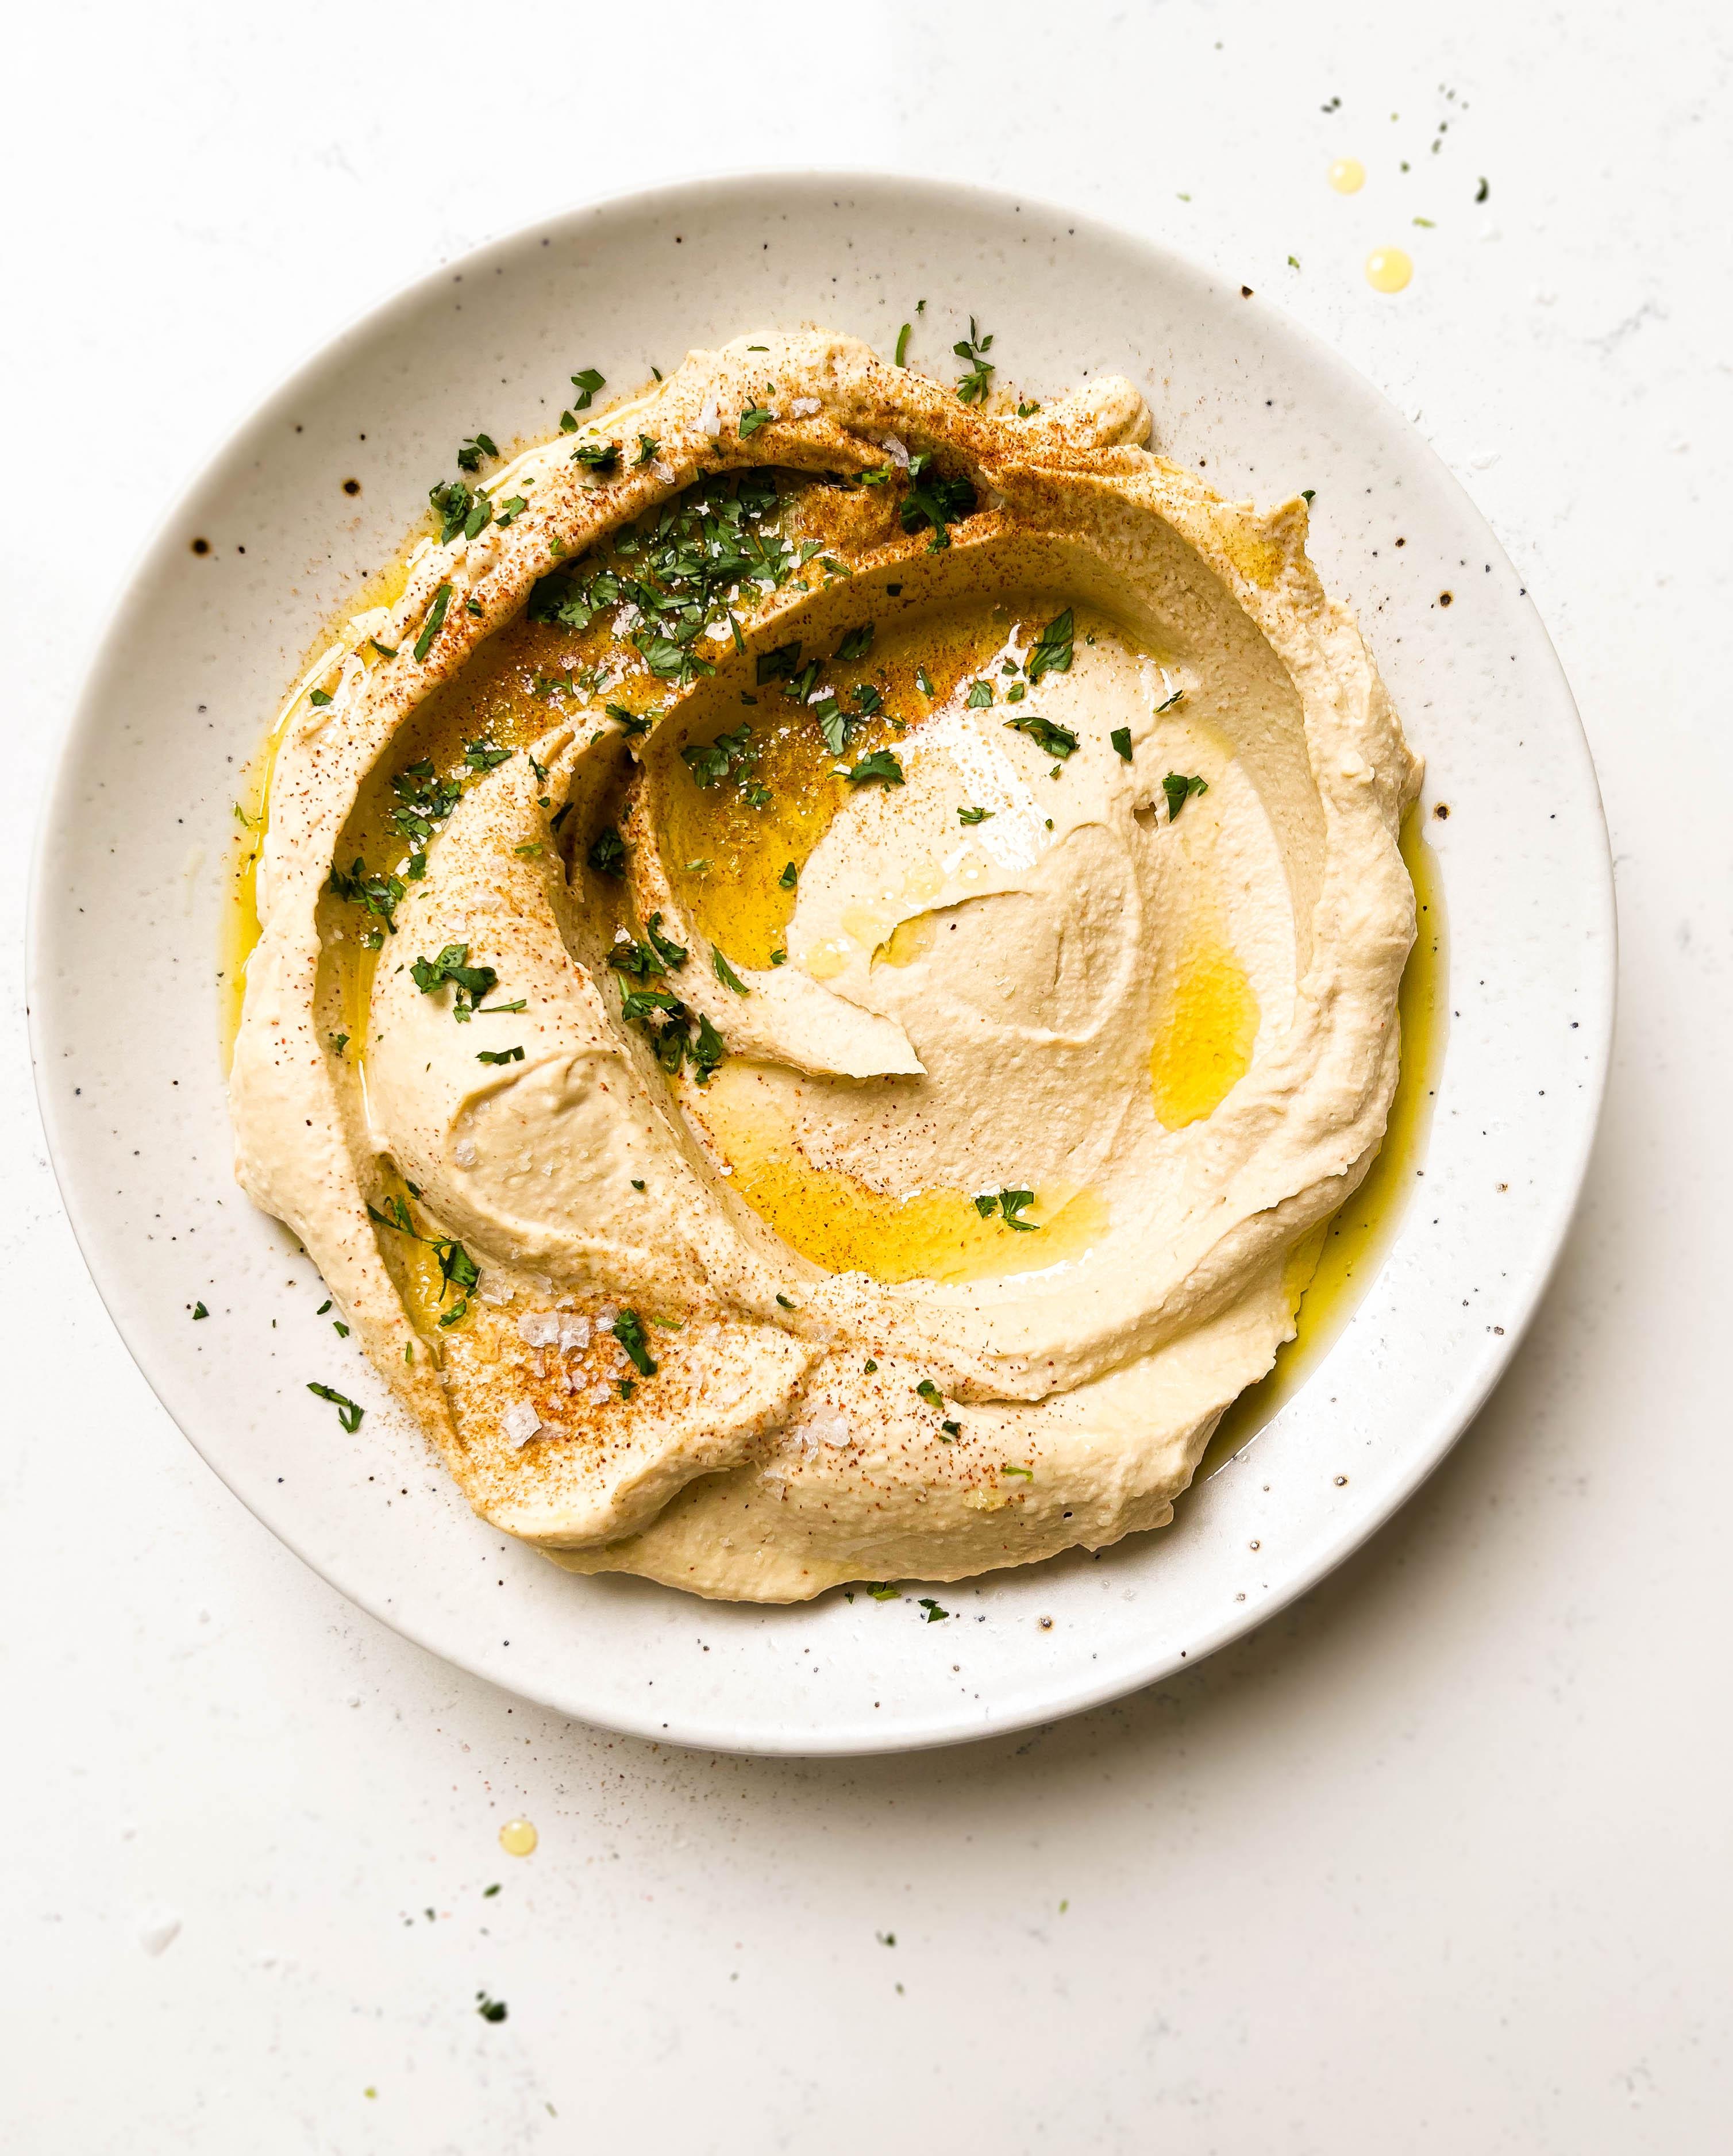 The Best Homemade Hummus